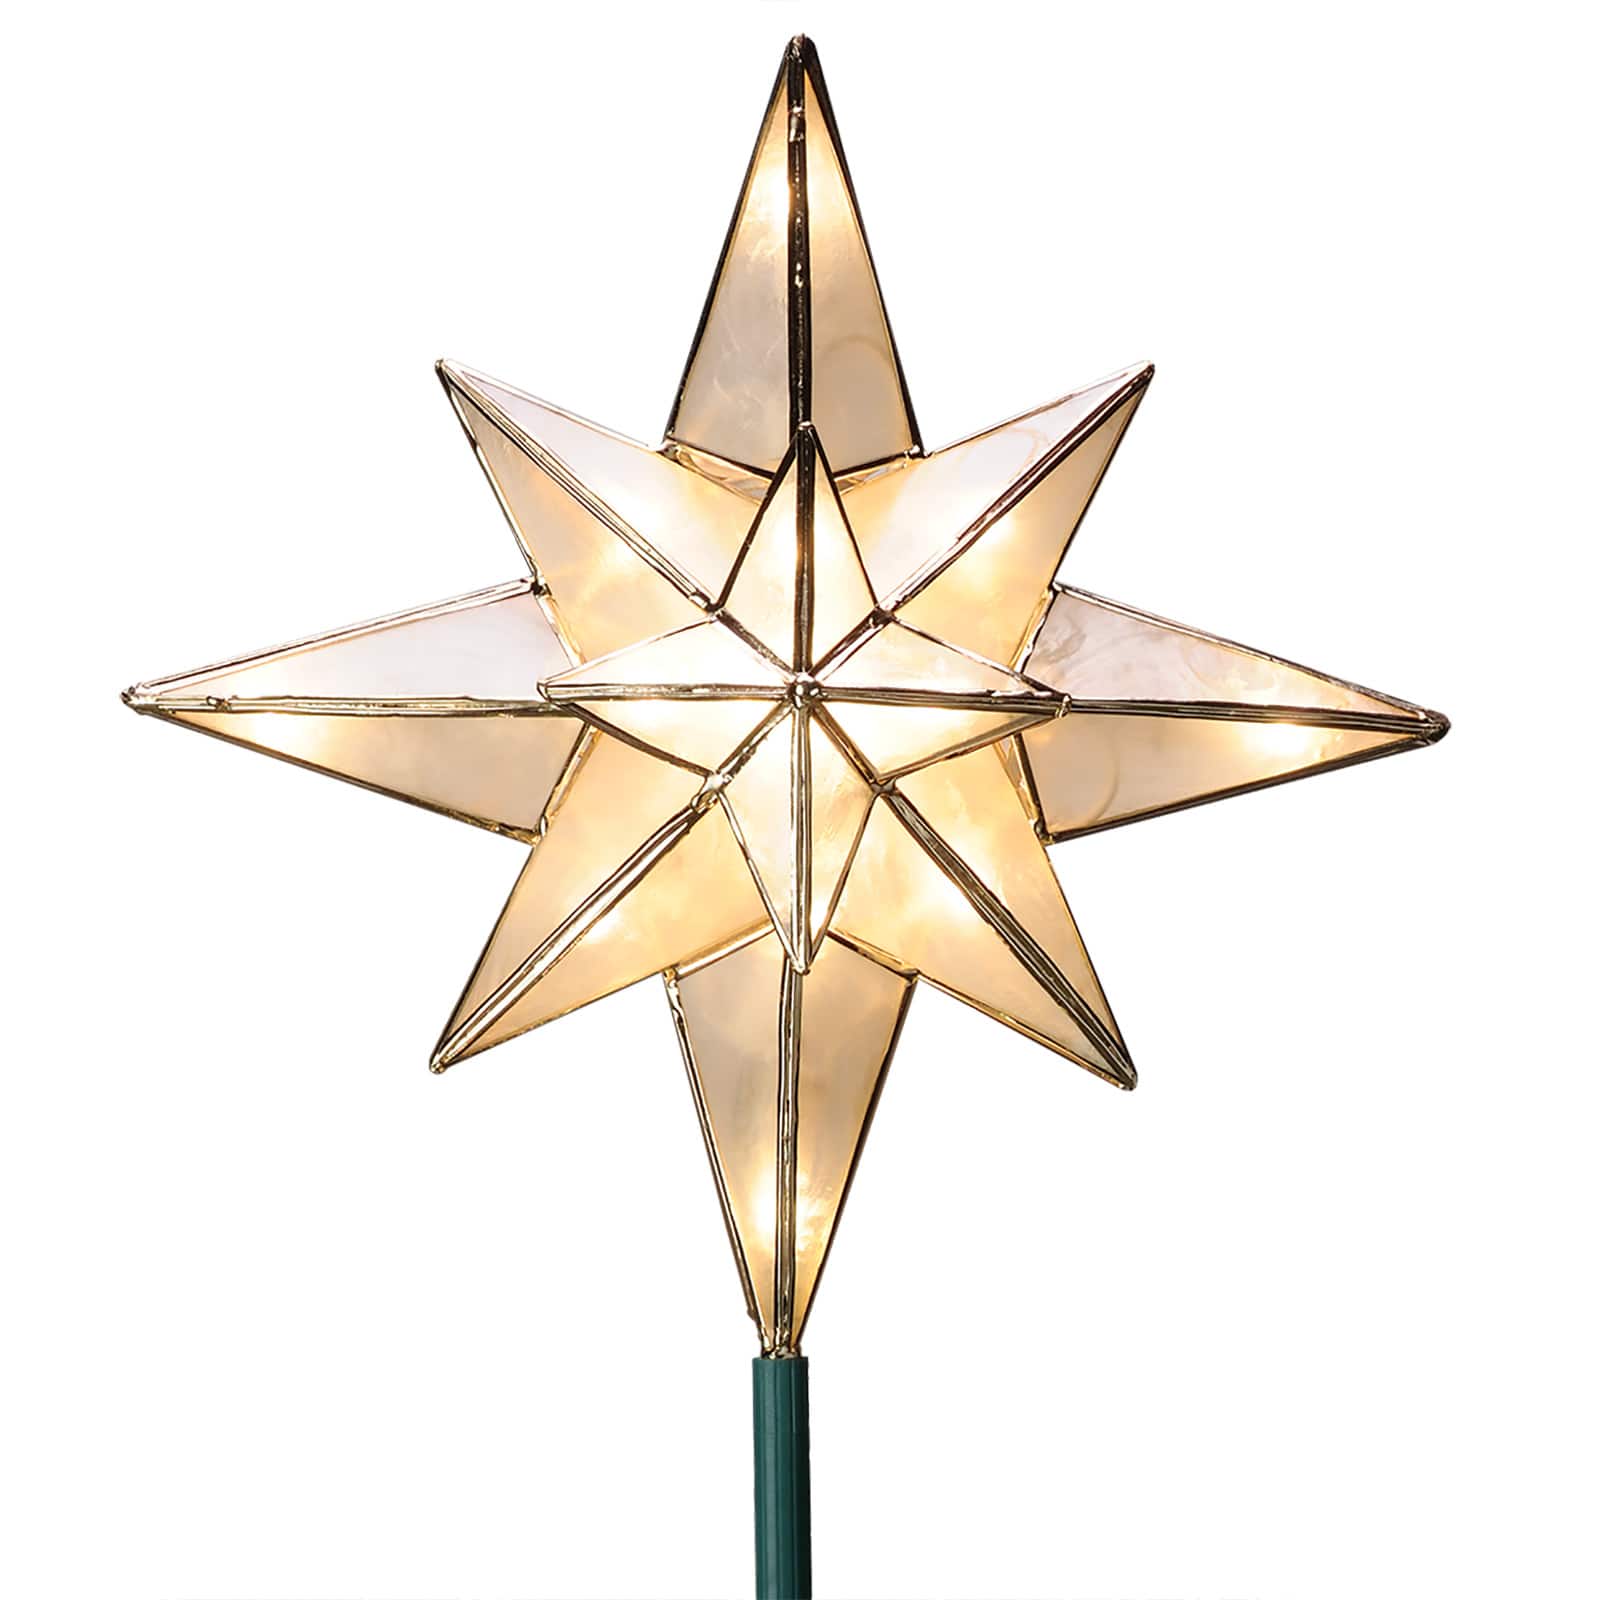 TERRAIN Celestial Star Tree Topper - Assorted